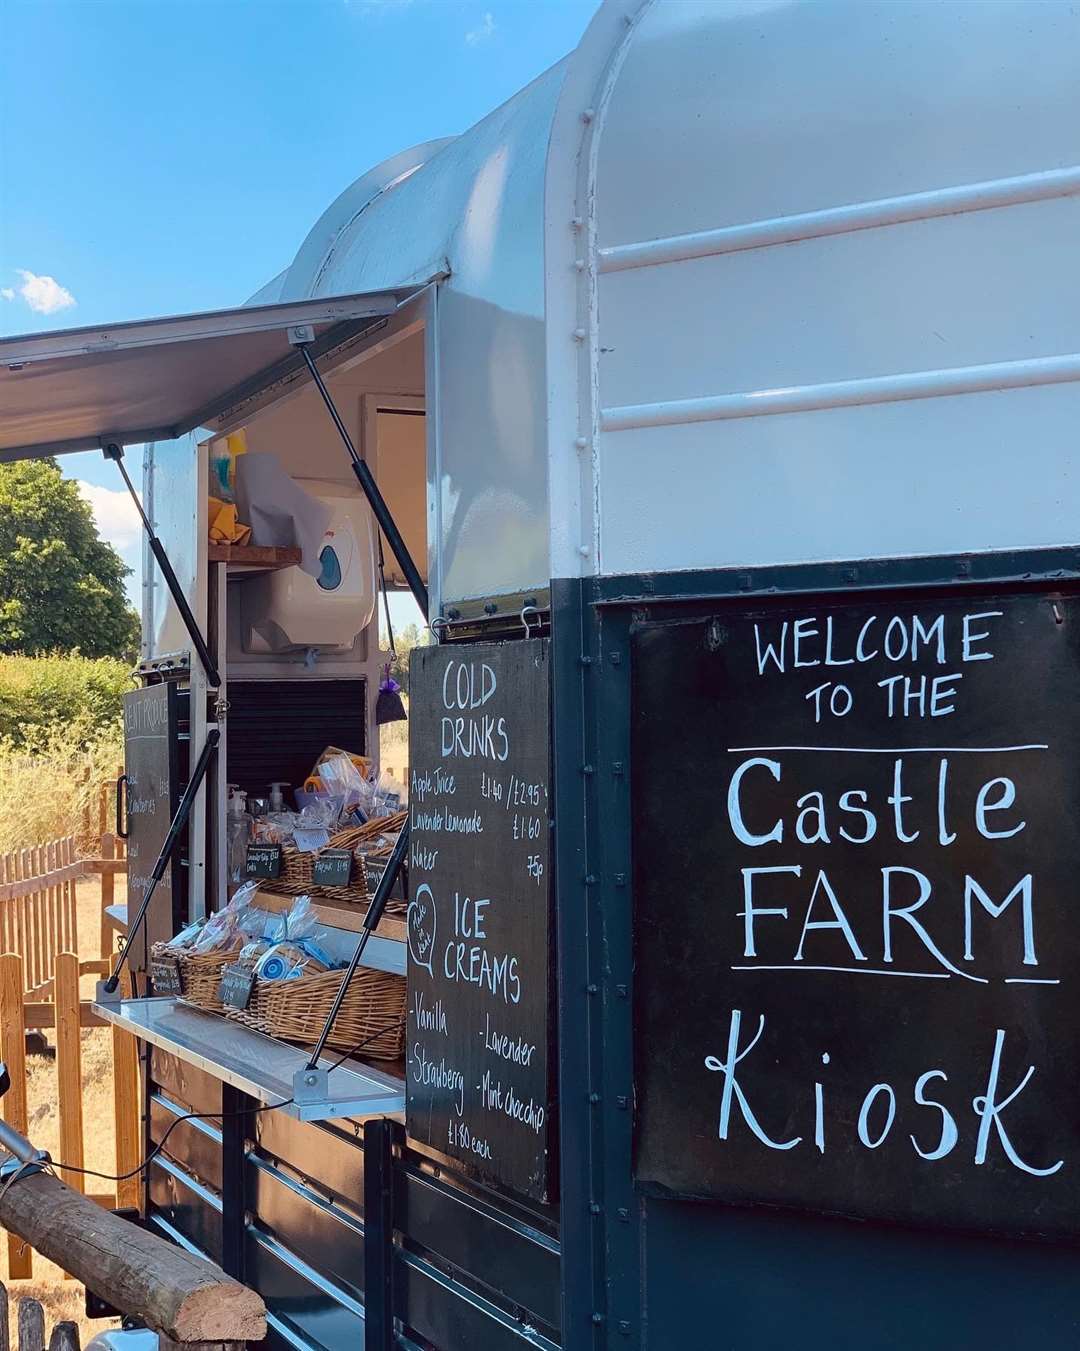 Castle Farm's kiosk is open at weekends now